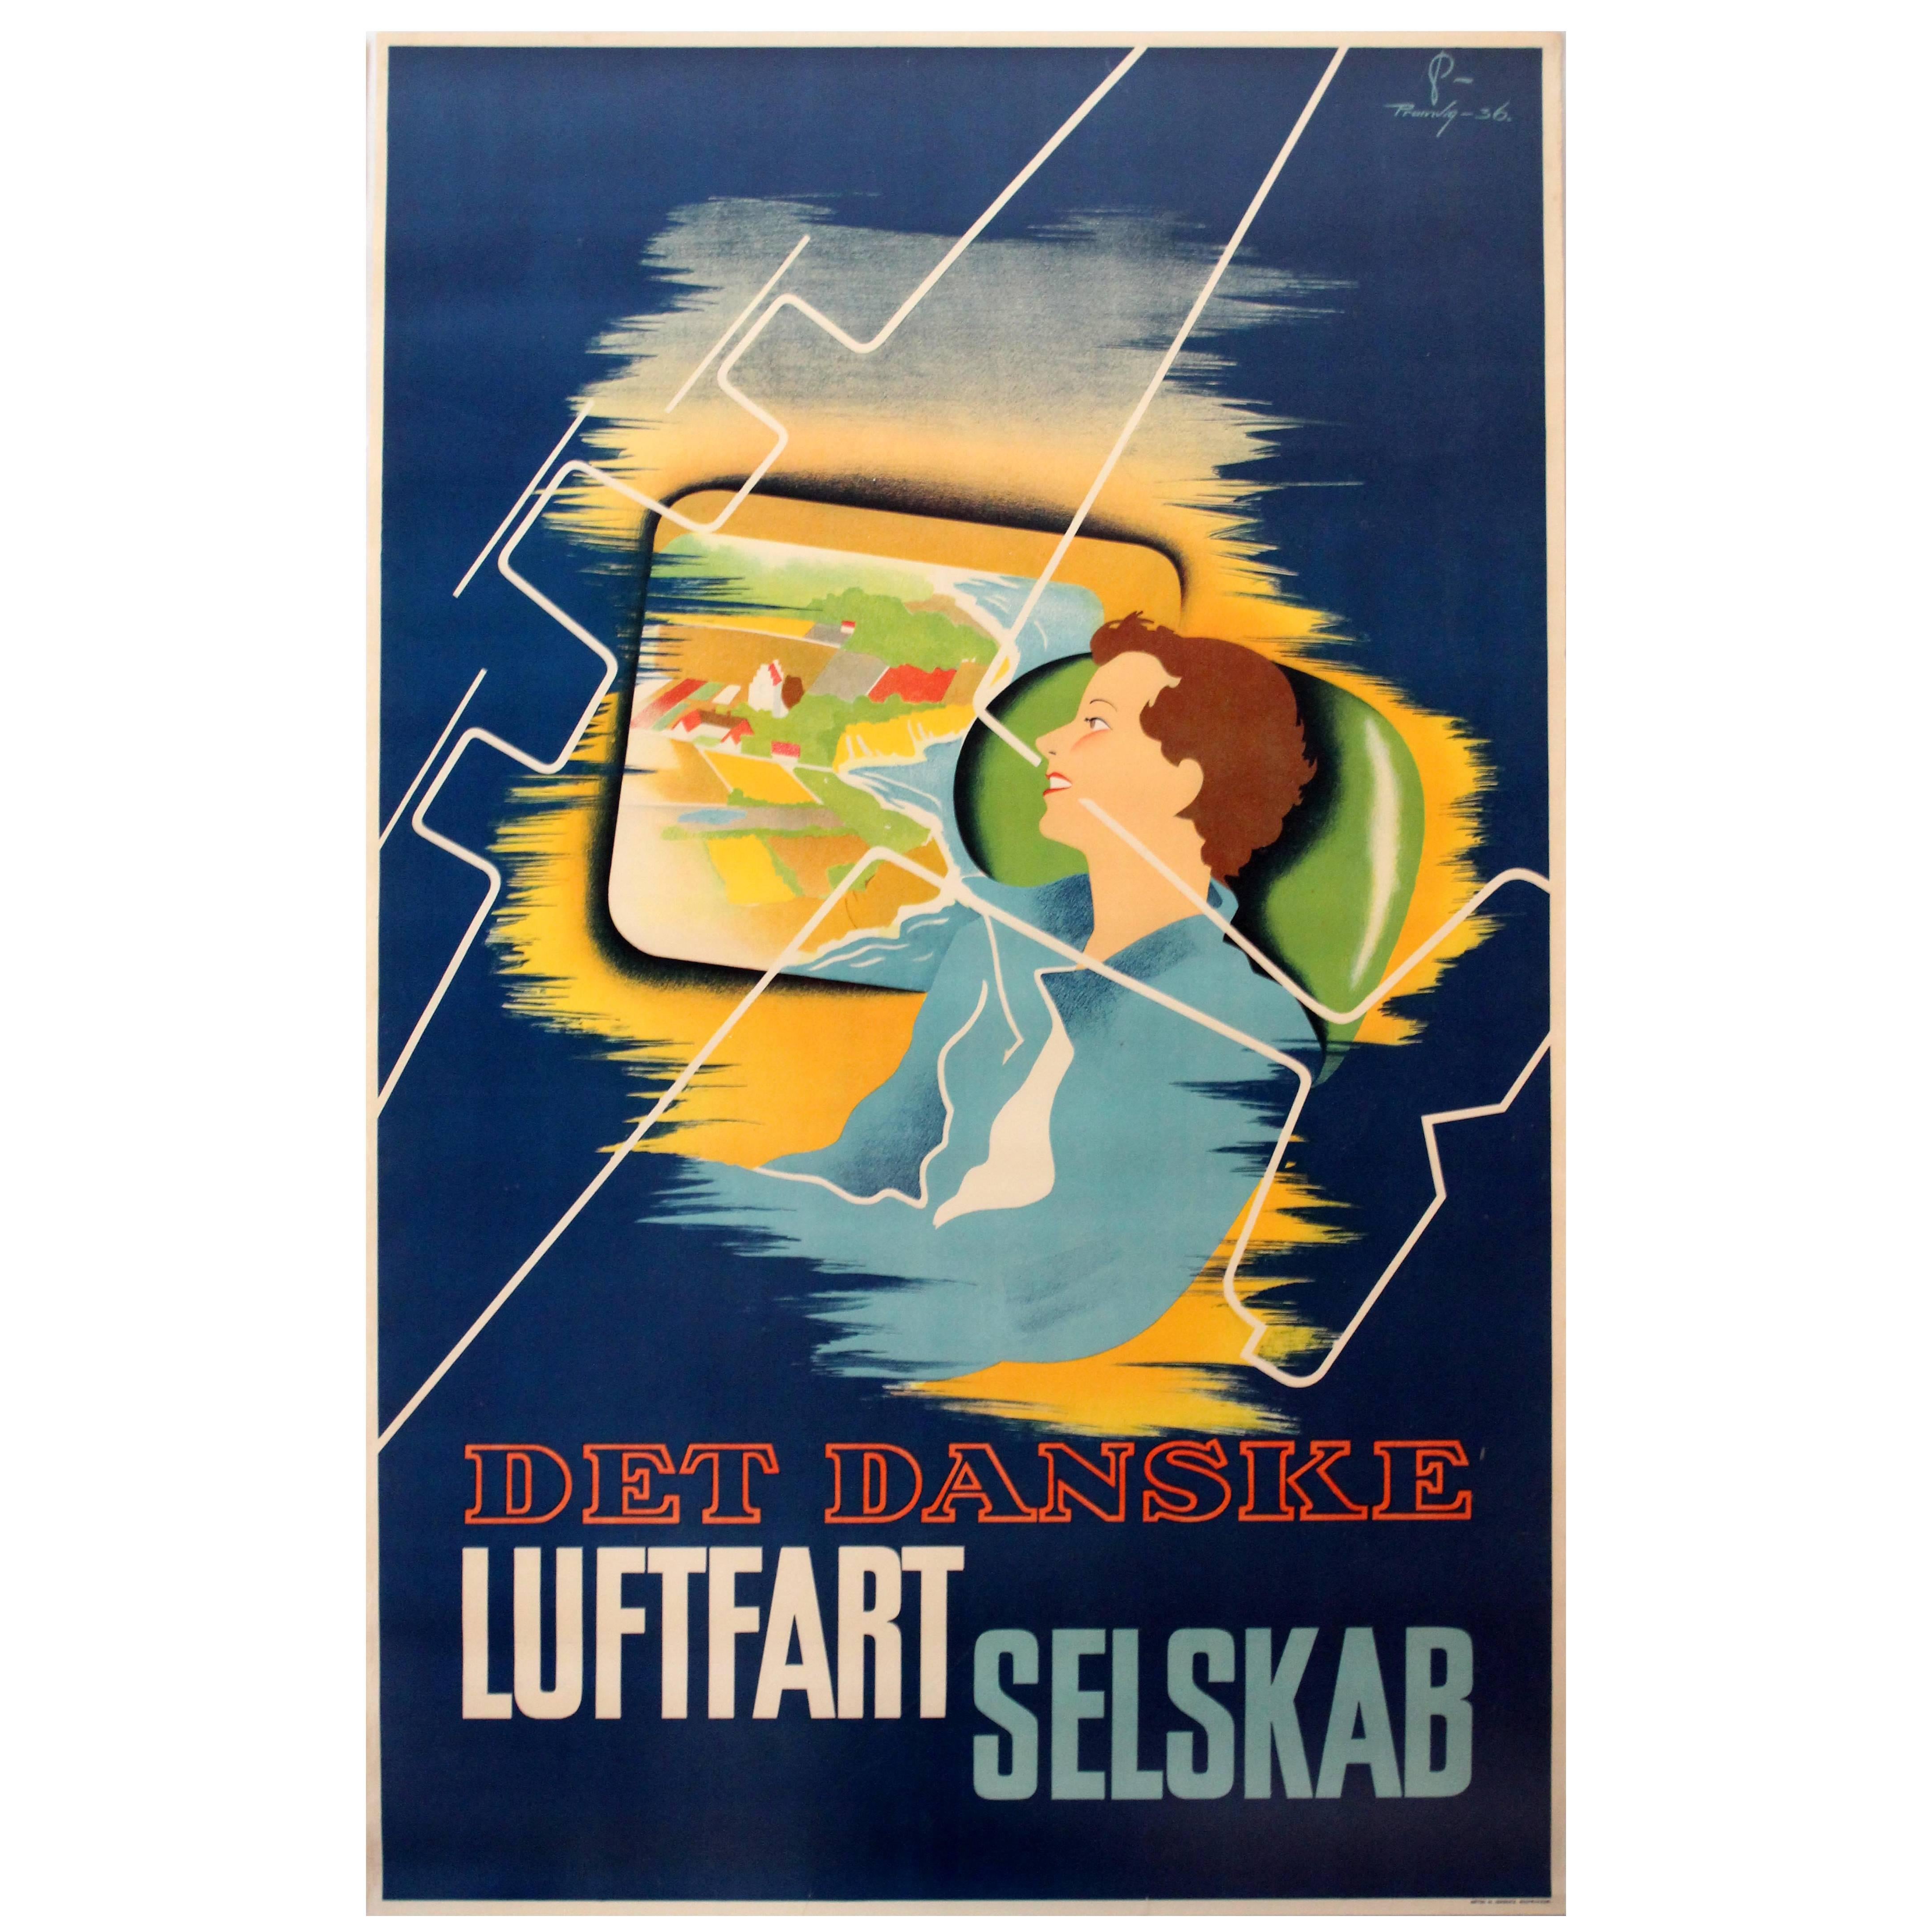 Original Werbeplakat von Danish Airlines, Det Danske Luftfartselskab, 1936